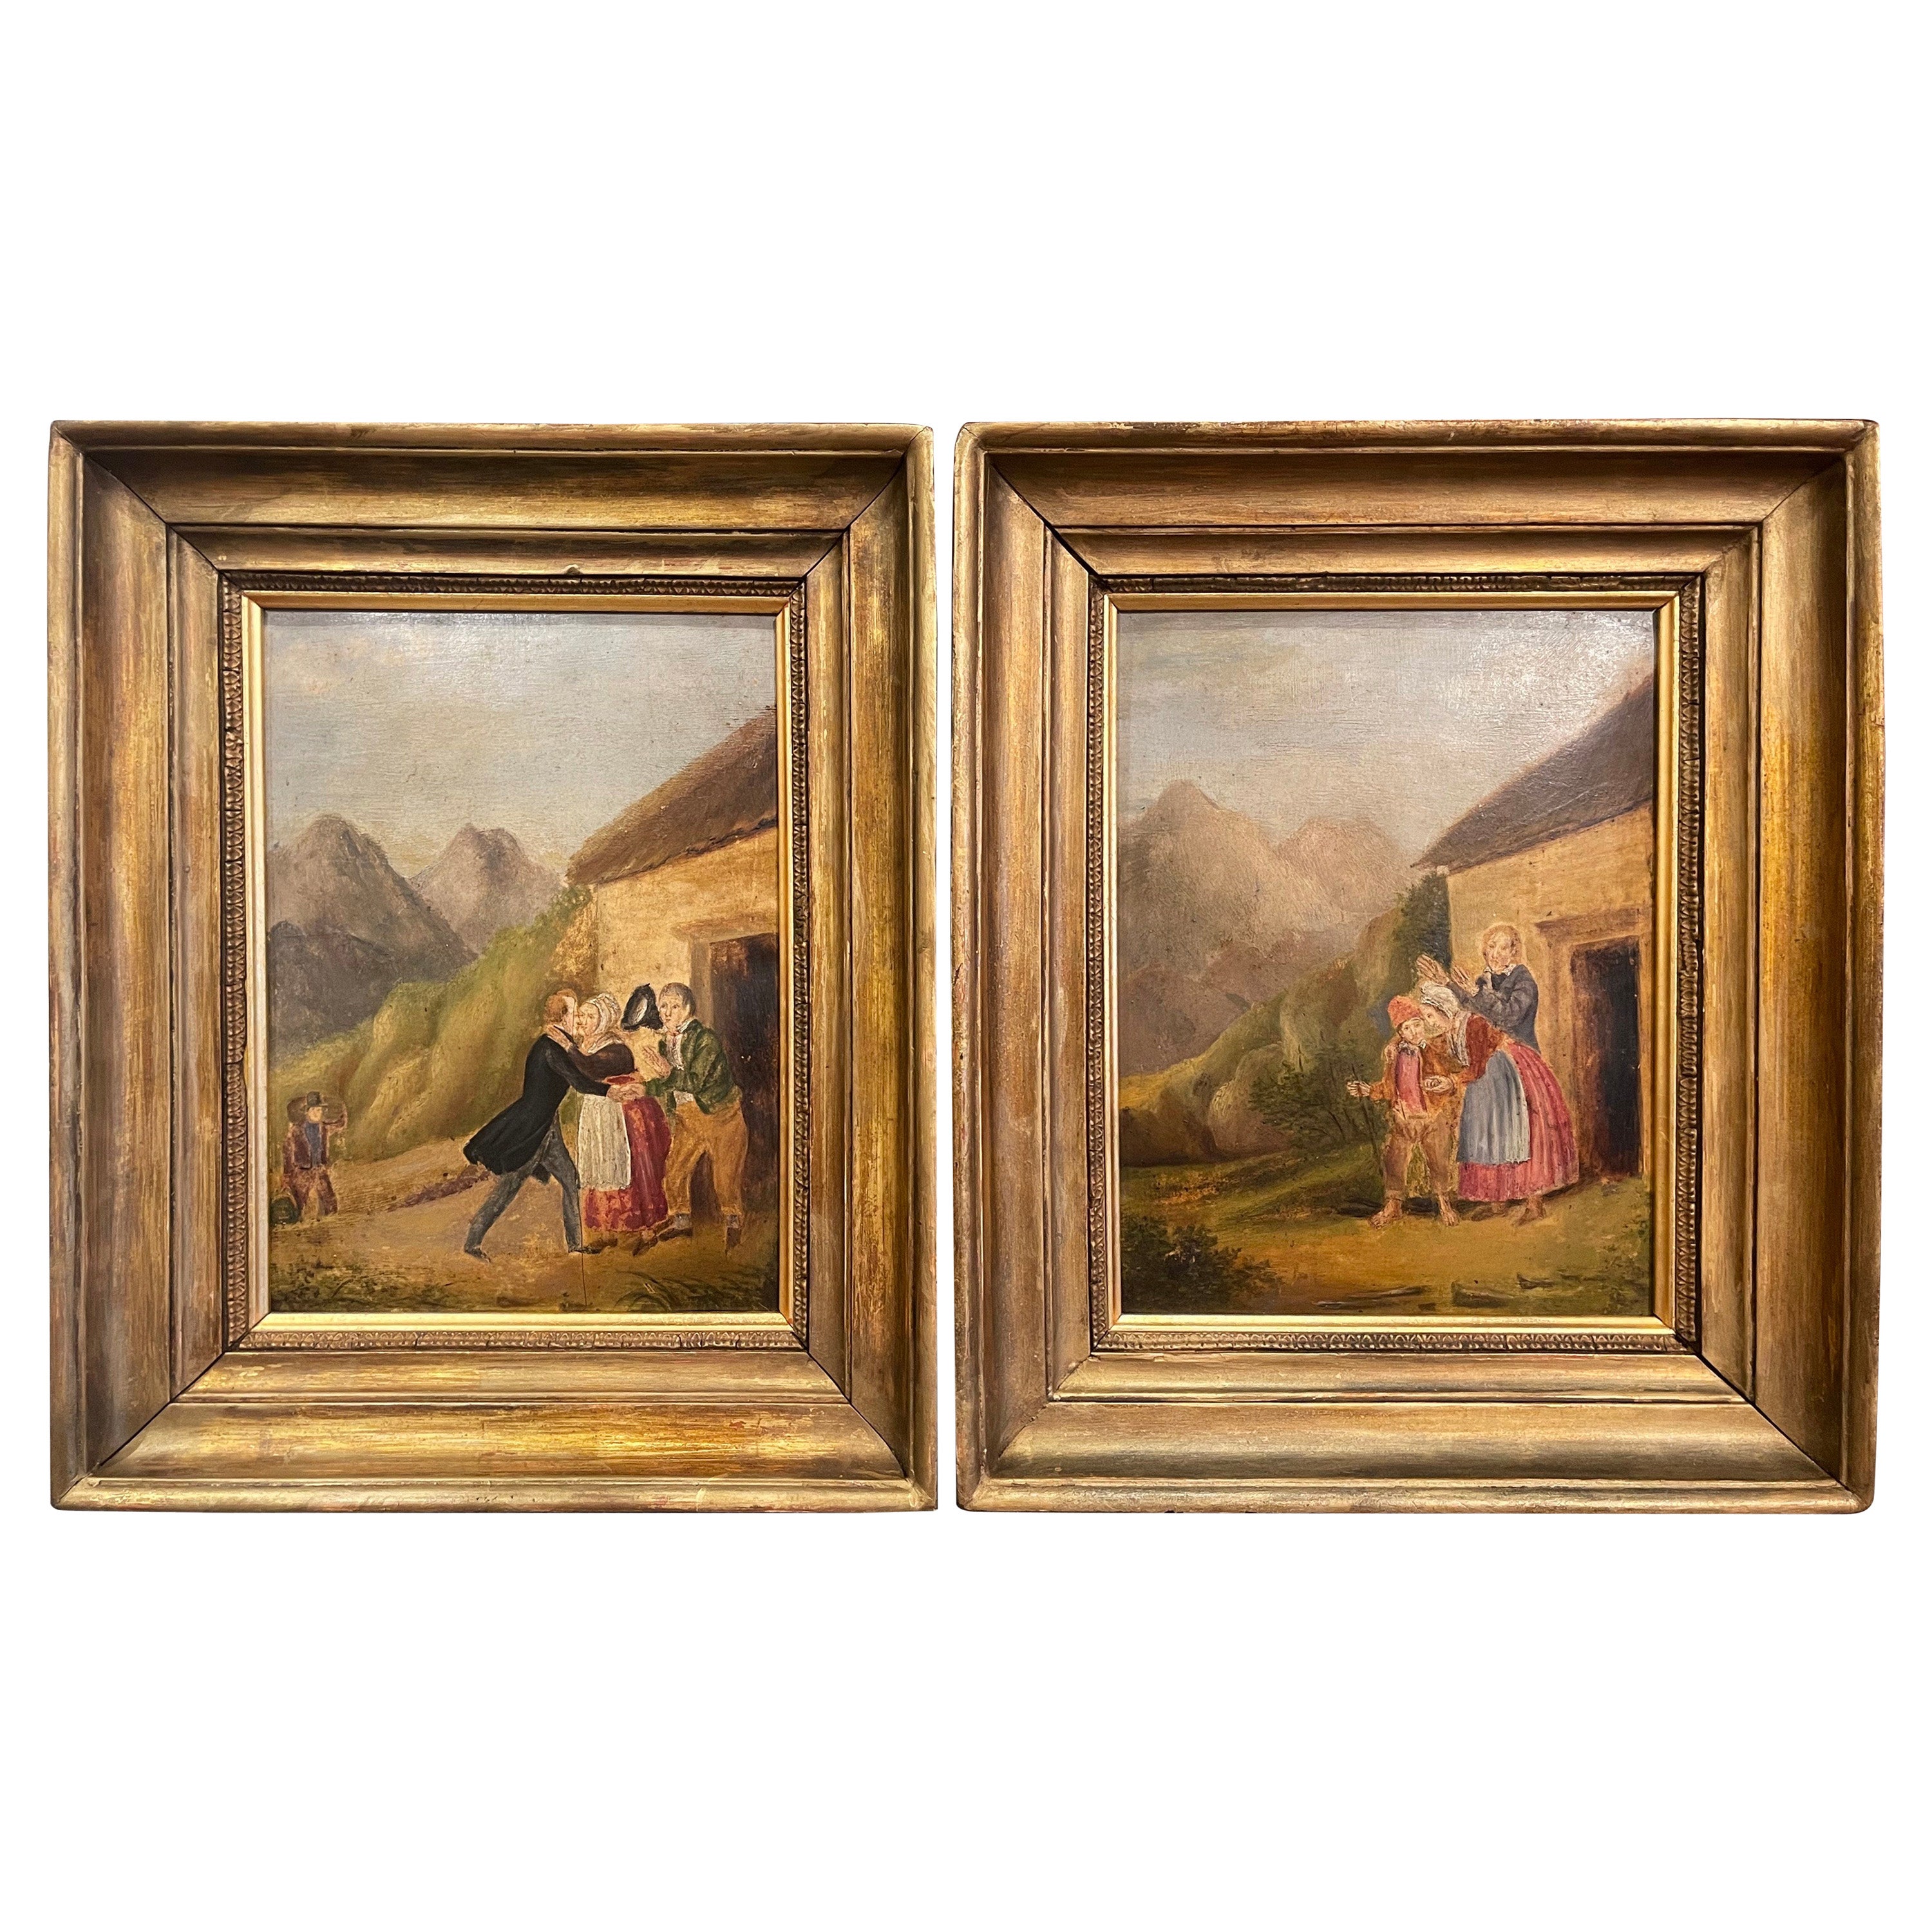 Paire de peintures pastorales françaises du 19ème siècle à l'huile sur panneau dans des cadres dorés